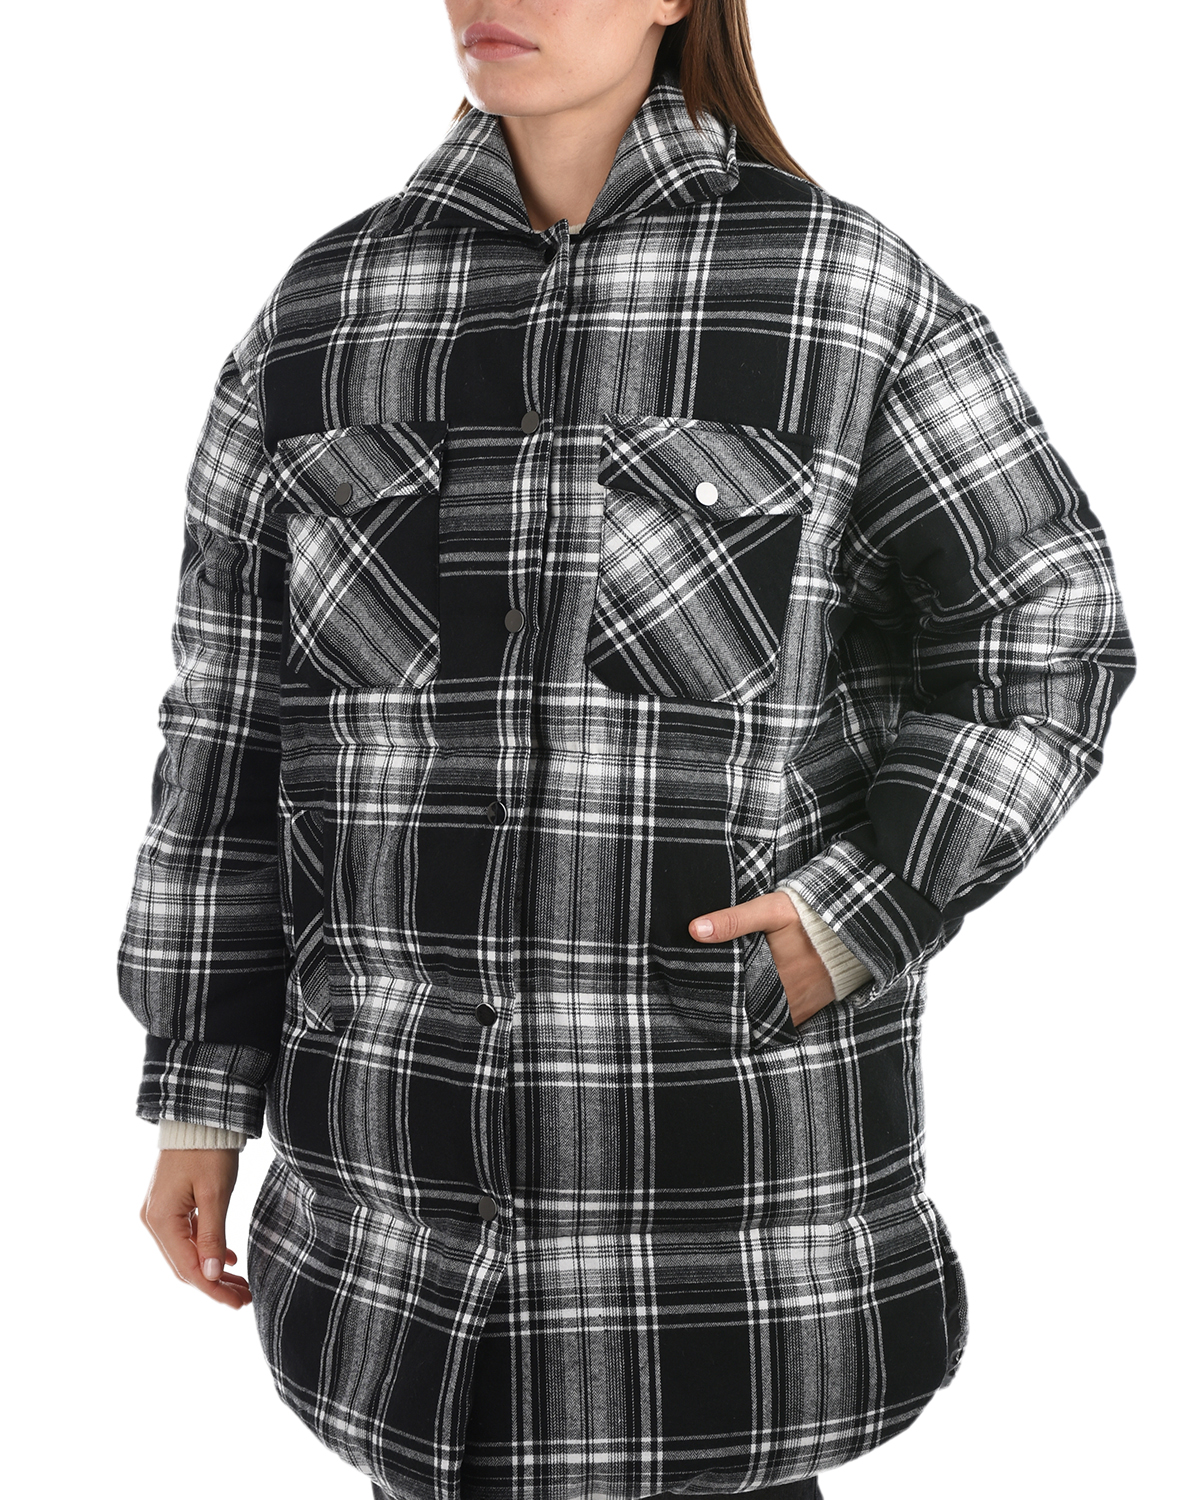 Пальто имитирующее рубашку в клетку Parosh, размер 42, цвет черный - фото 8